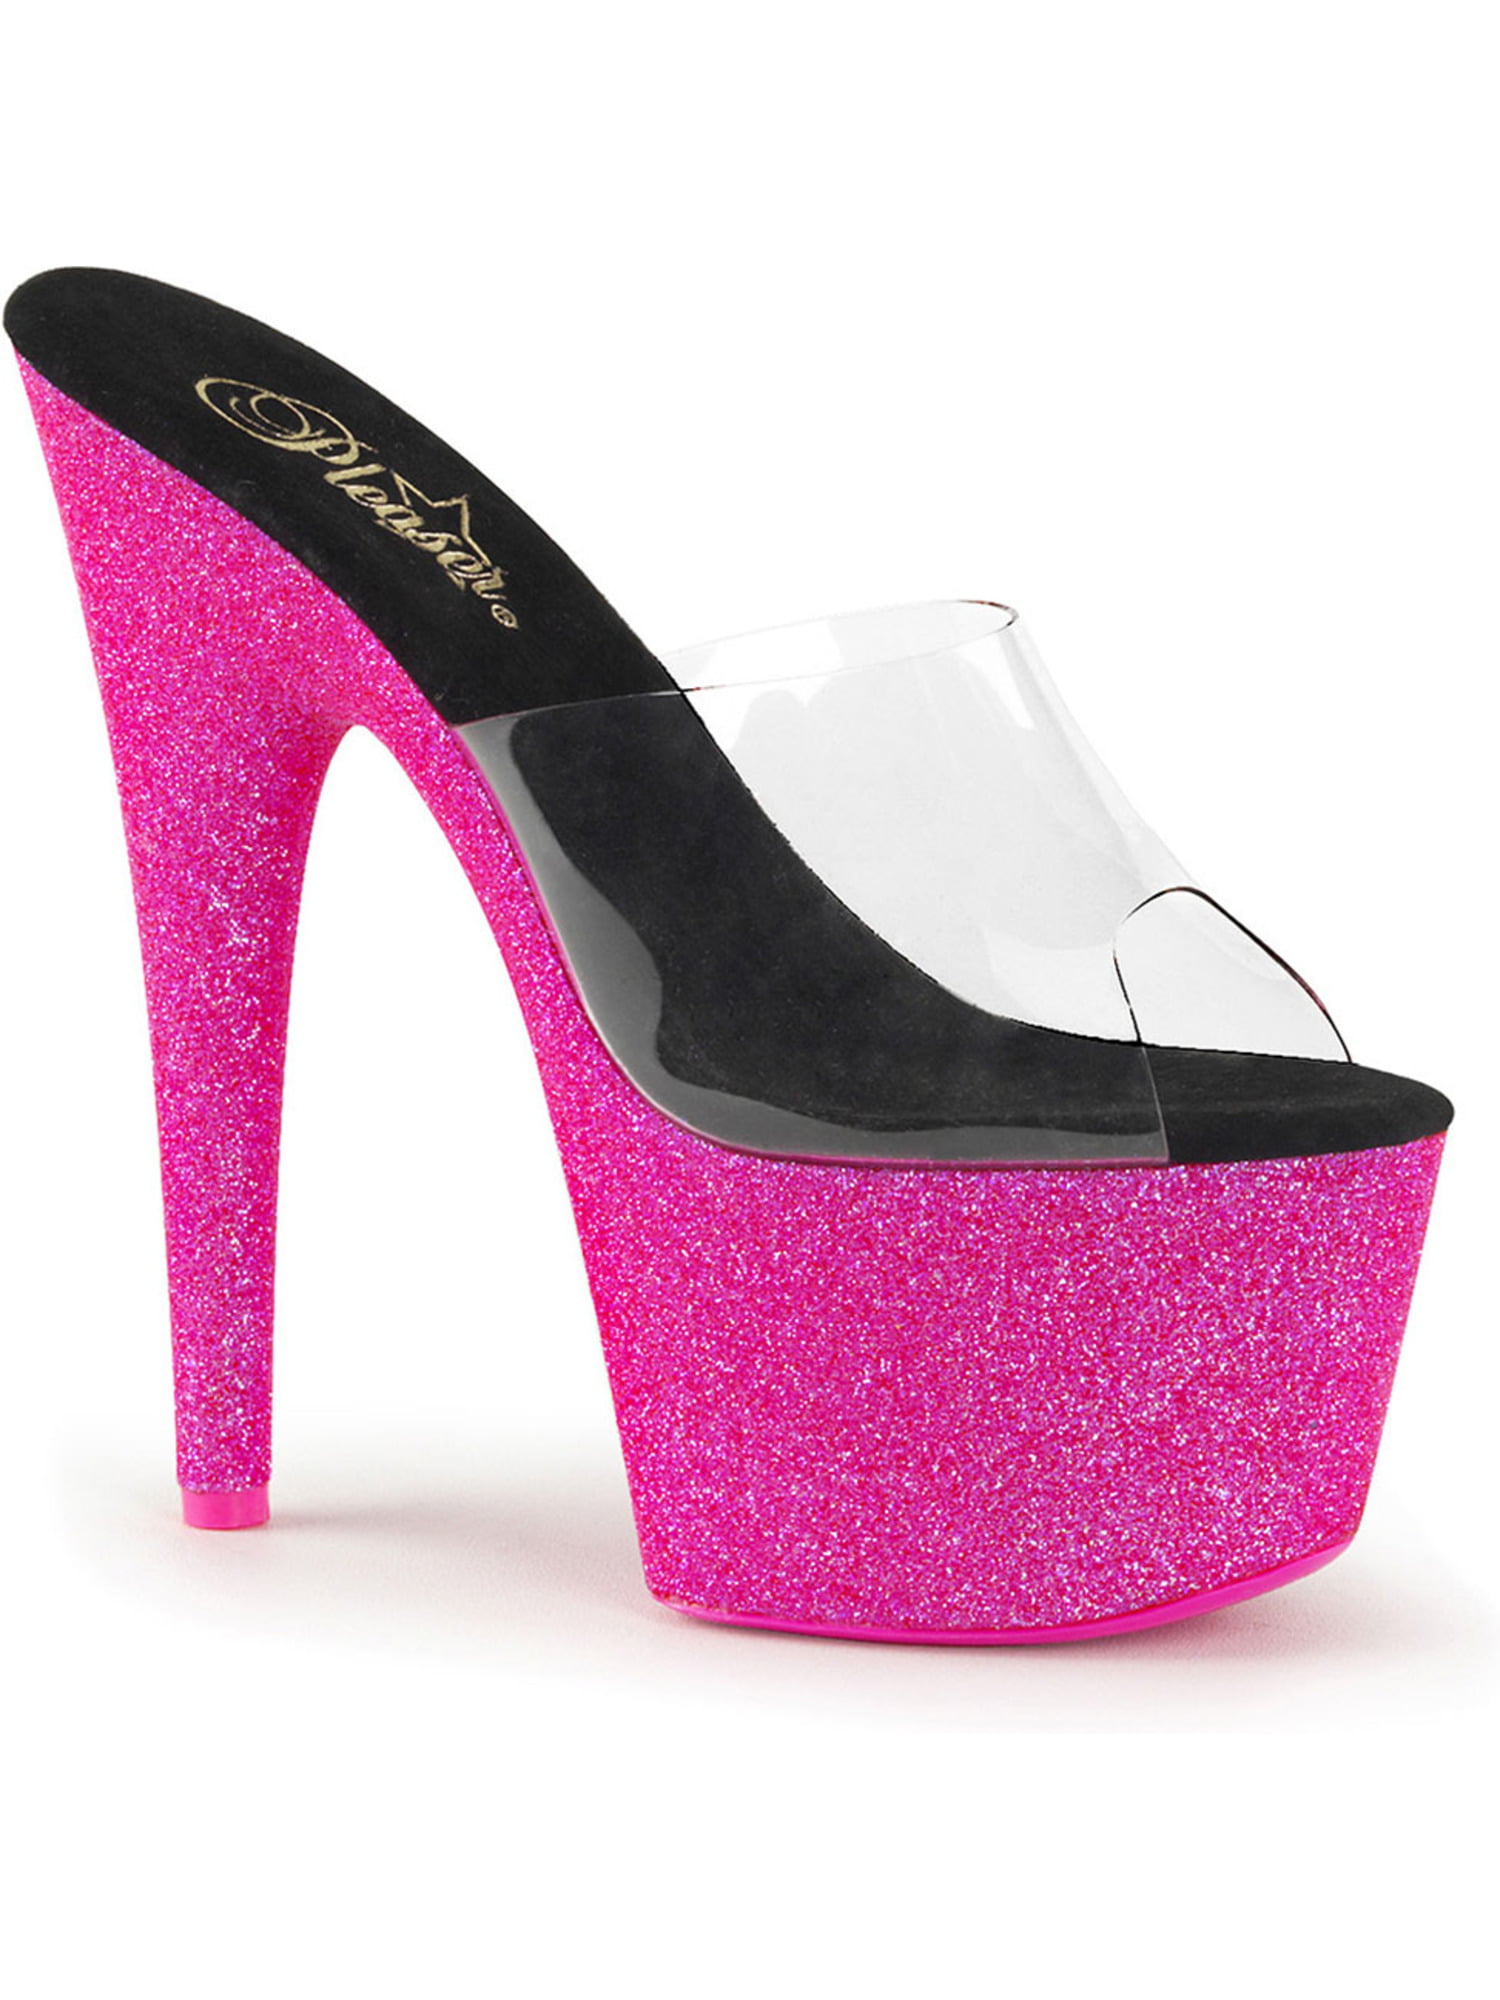 Pleaser - Womens Hot Pink Heels Slide Sandals UV Reactive Shoes Neon ...